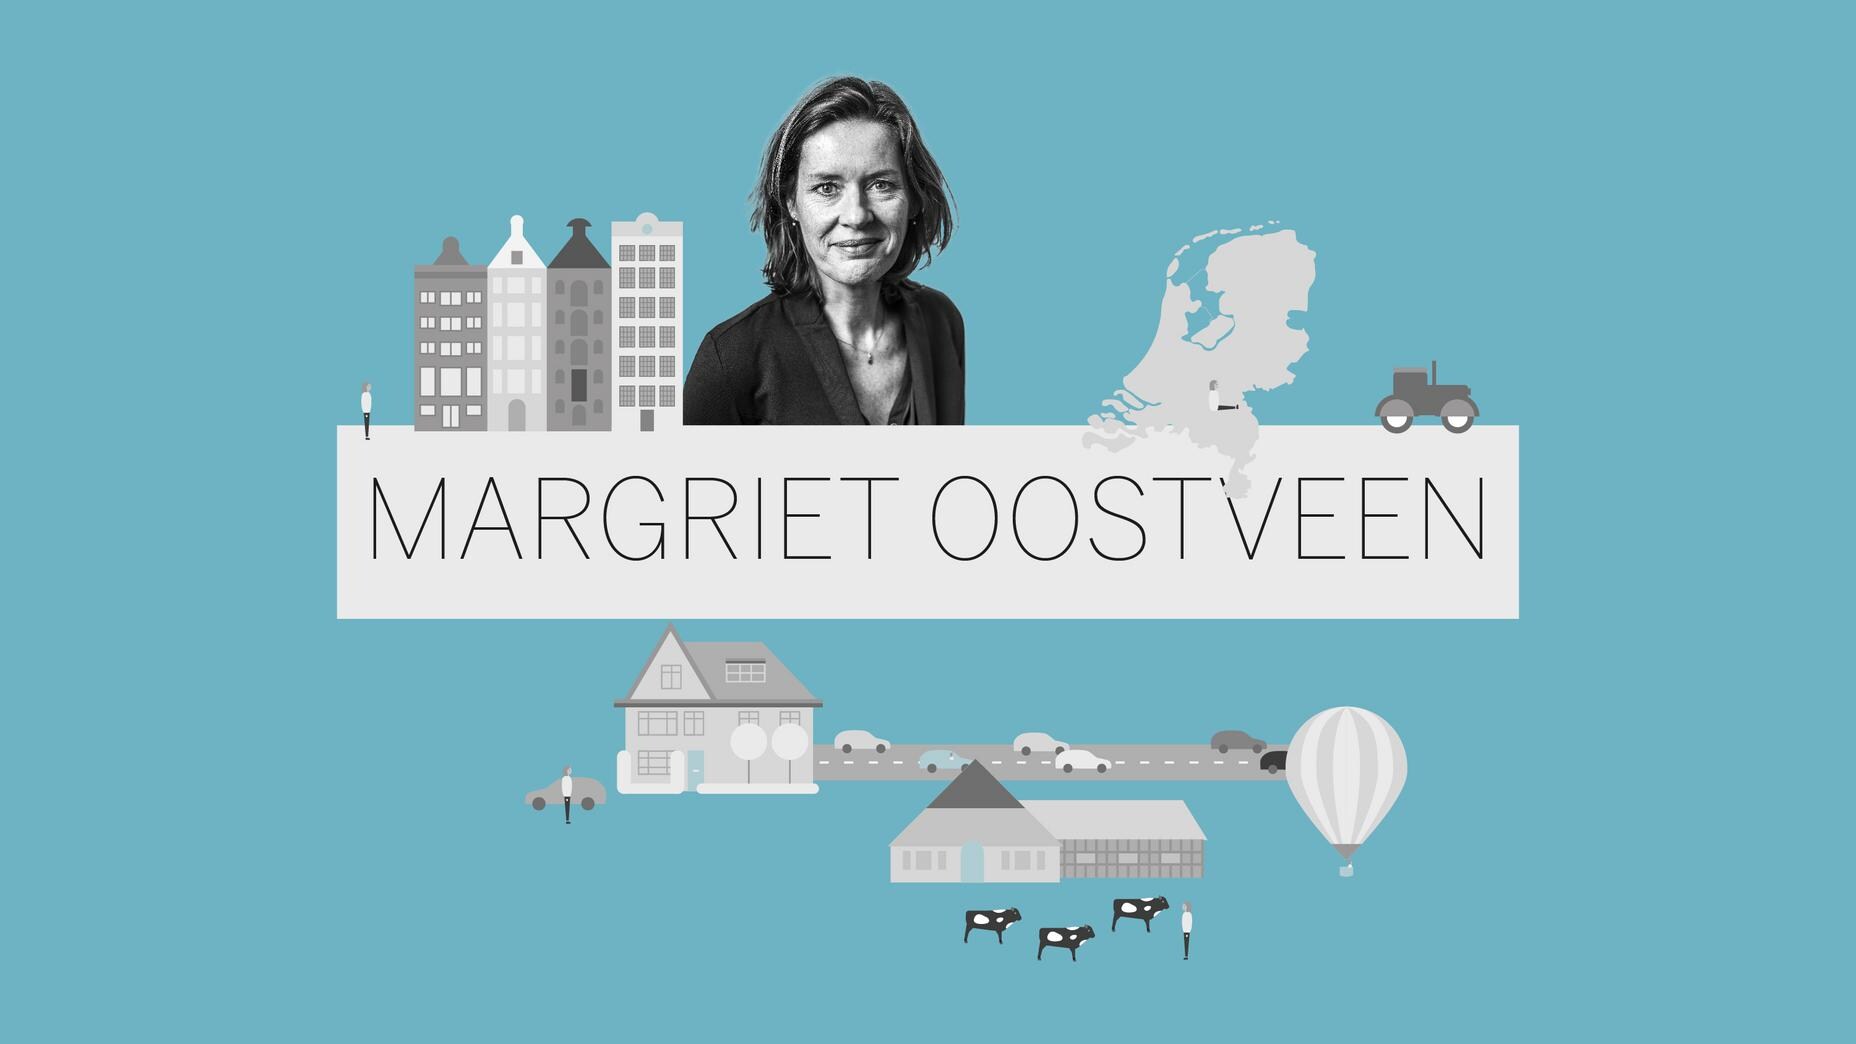 Verslaggeverscolumn - Margriet Oostveen in Vlissingen